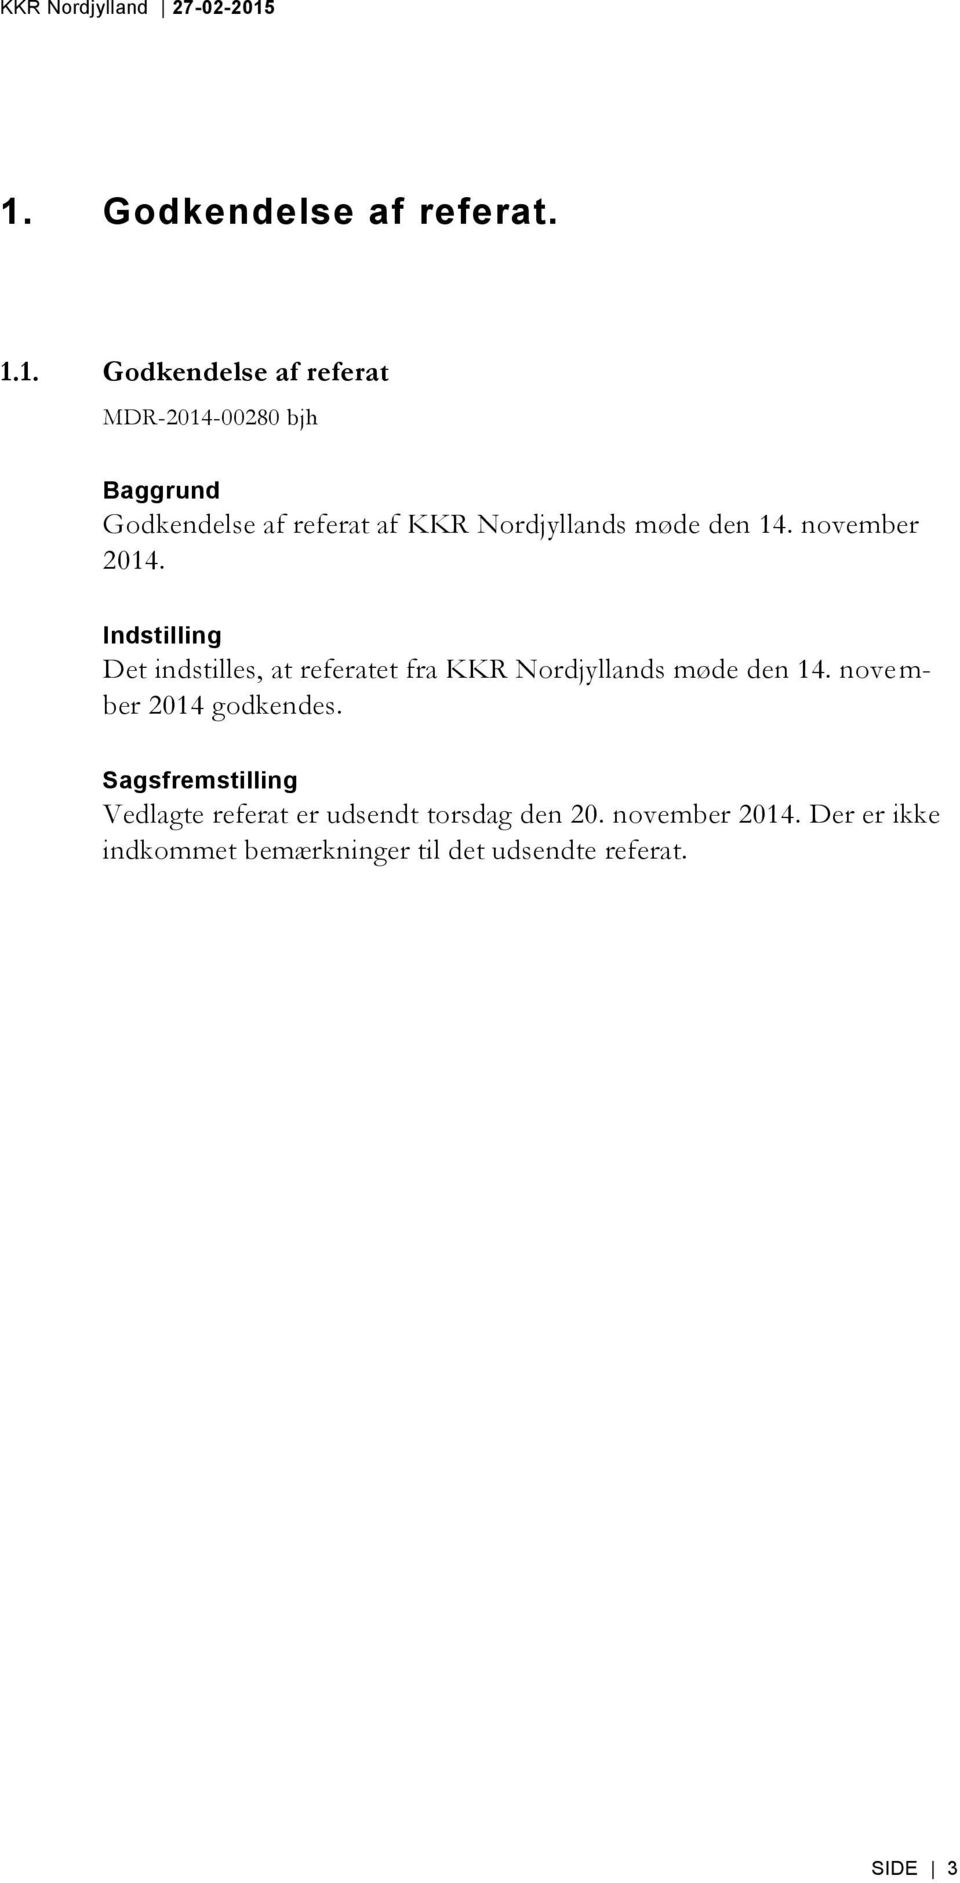 Indstilling Det indstilles, at referatet fra KKR Nordjyllands møde den 14. november 2014 godkendes.